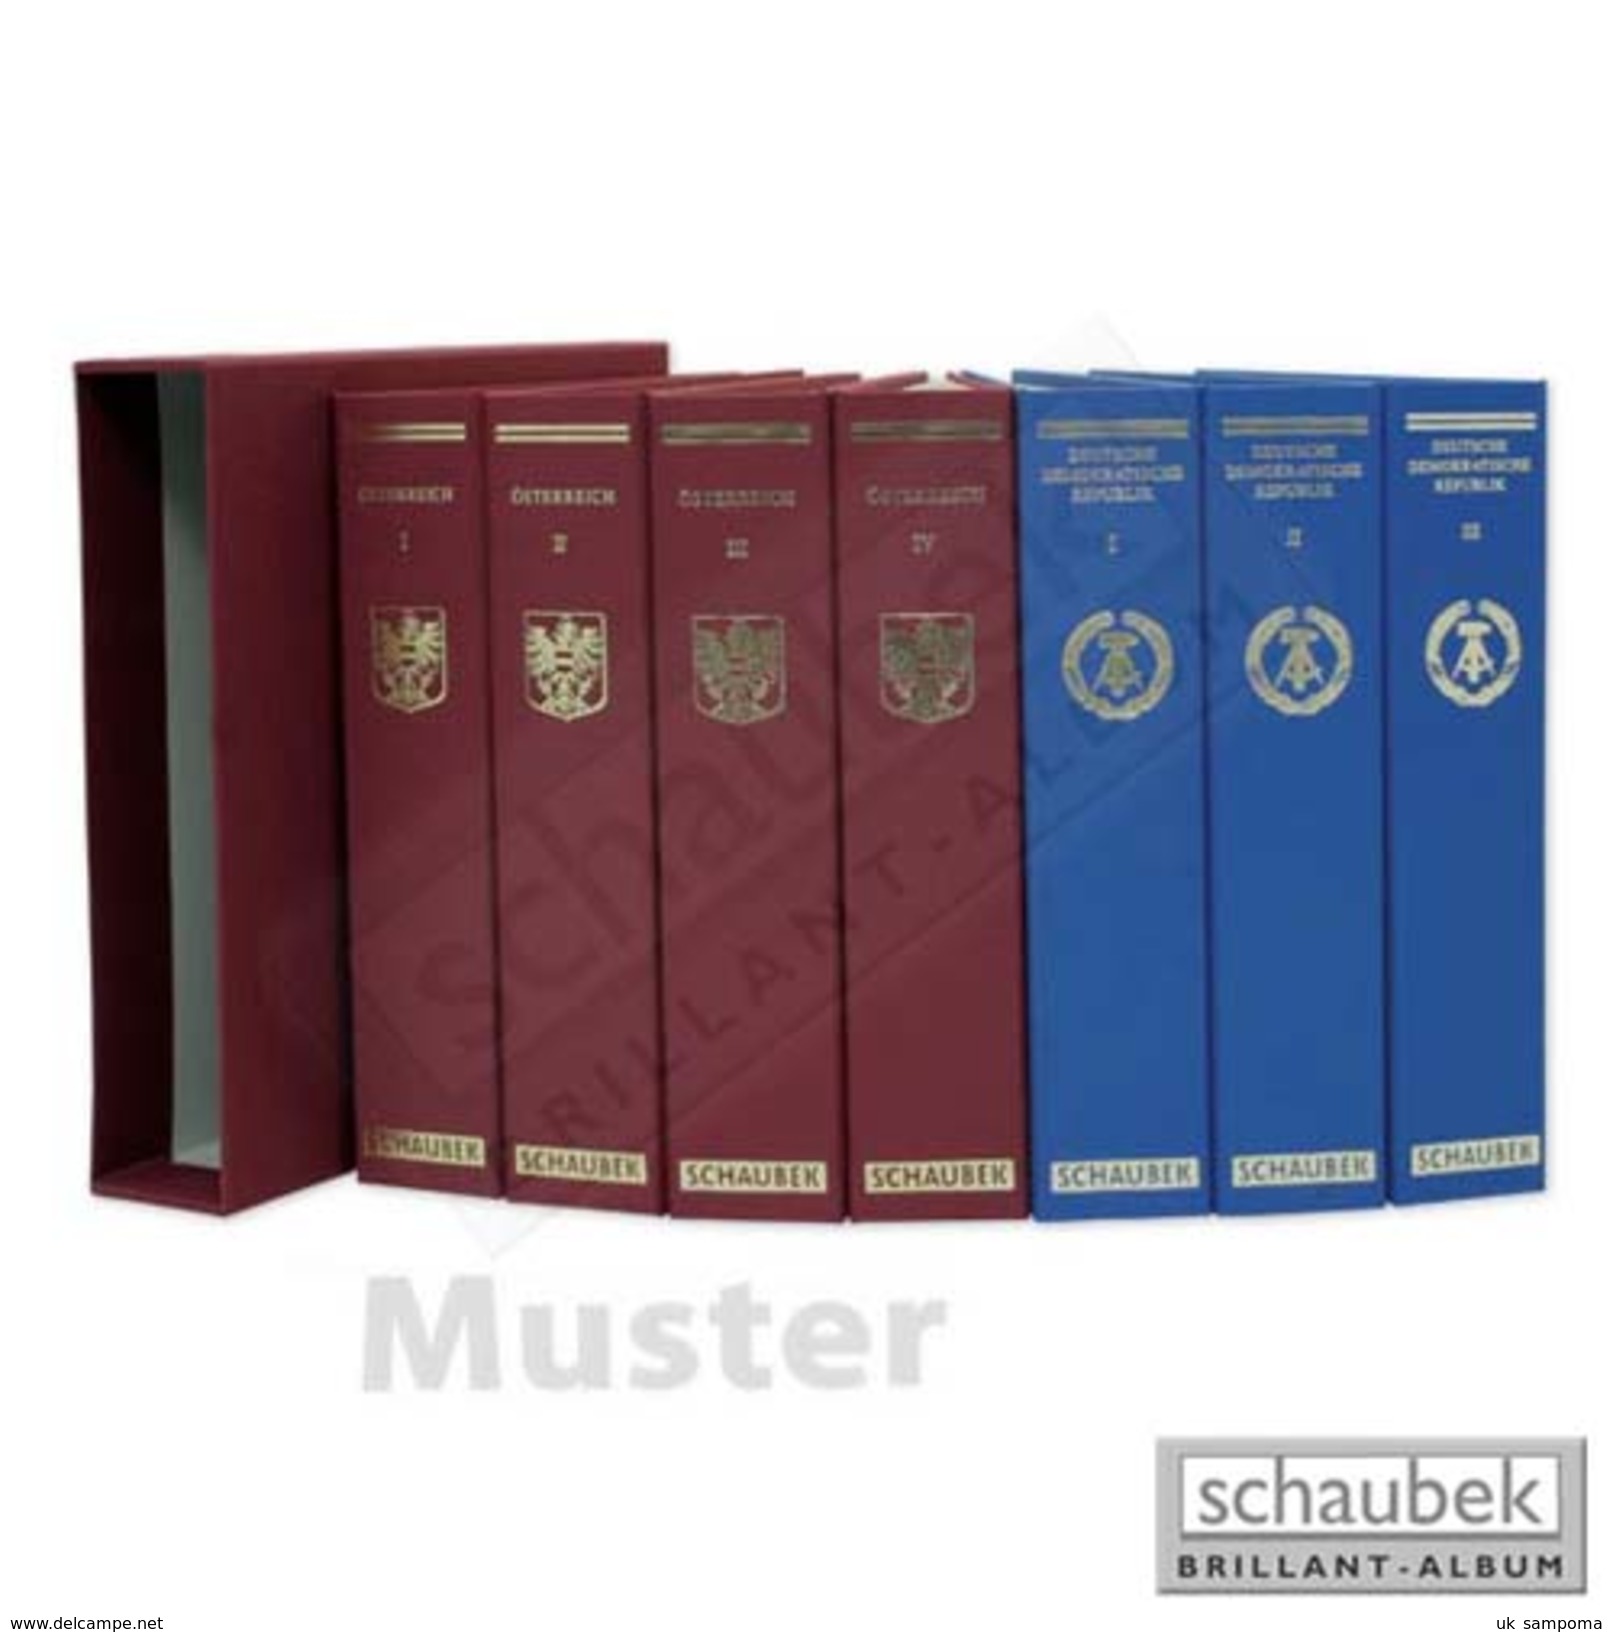 Schaubek A-809/03B Album Vatican 2002-2014 Brillant, In A Blue Screw Post Binder, Vol. III, Without Slipcase - Komplettalben